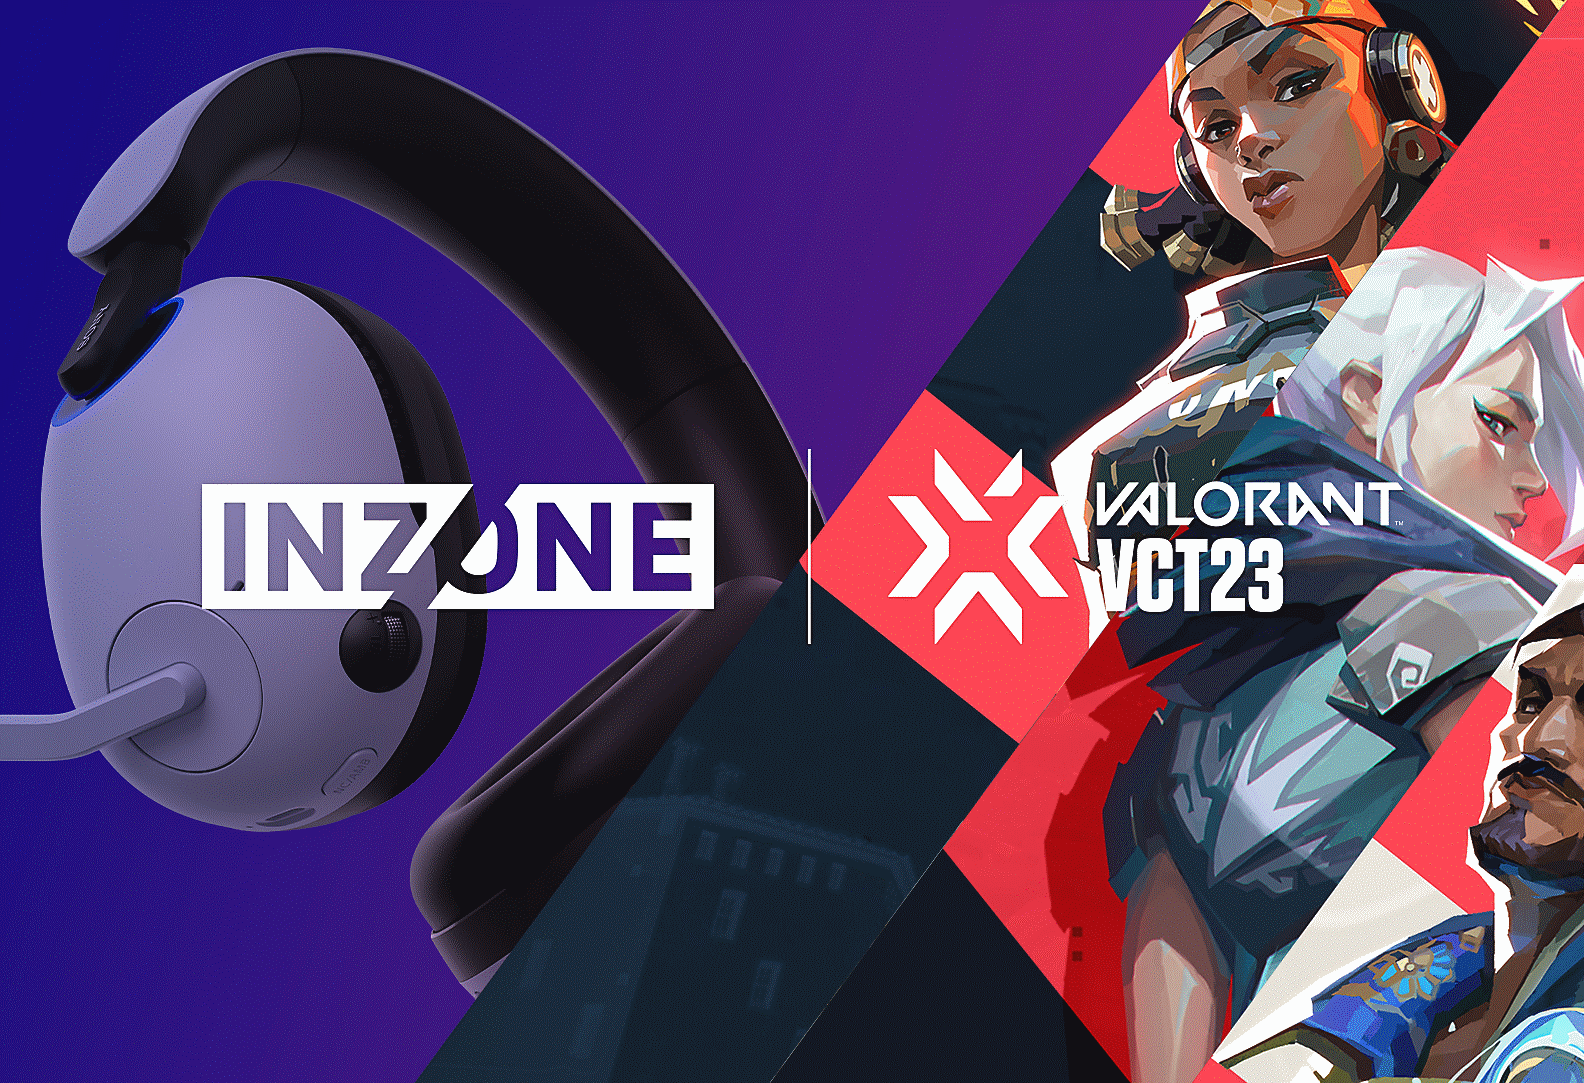 Image du casque gaming INZONE H9 de Sony avec des personnages de VALORANT et les logos INZONE et VALORANT VCT23